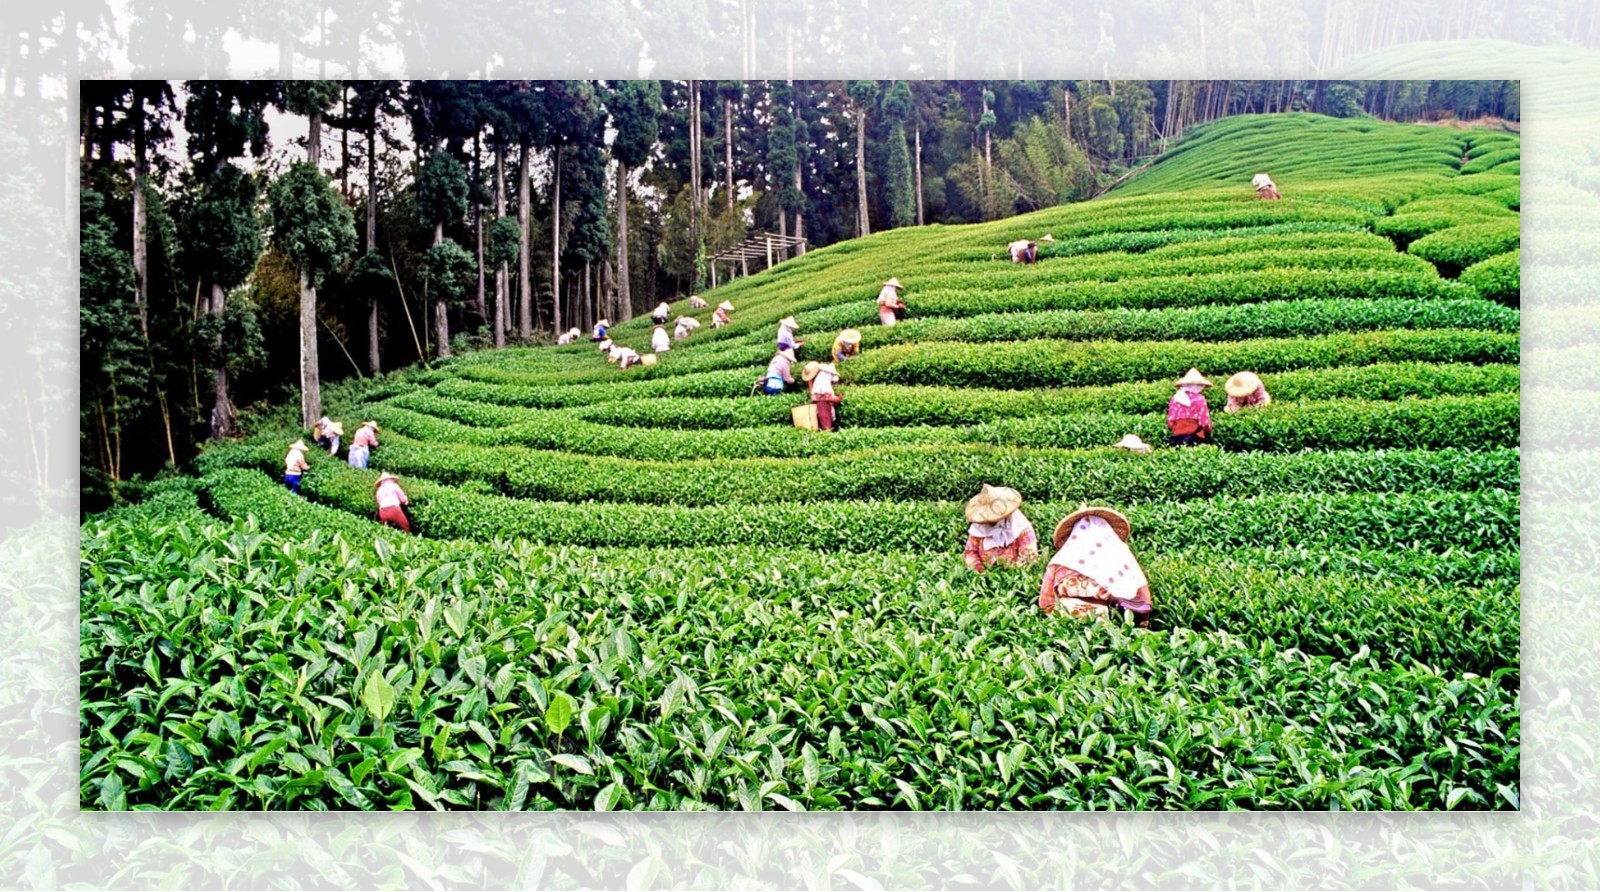 夏季避暑茶旅线路：云南西双版纳-大渡岗世界最大连片茶园一日游